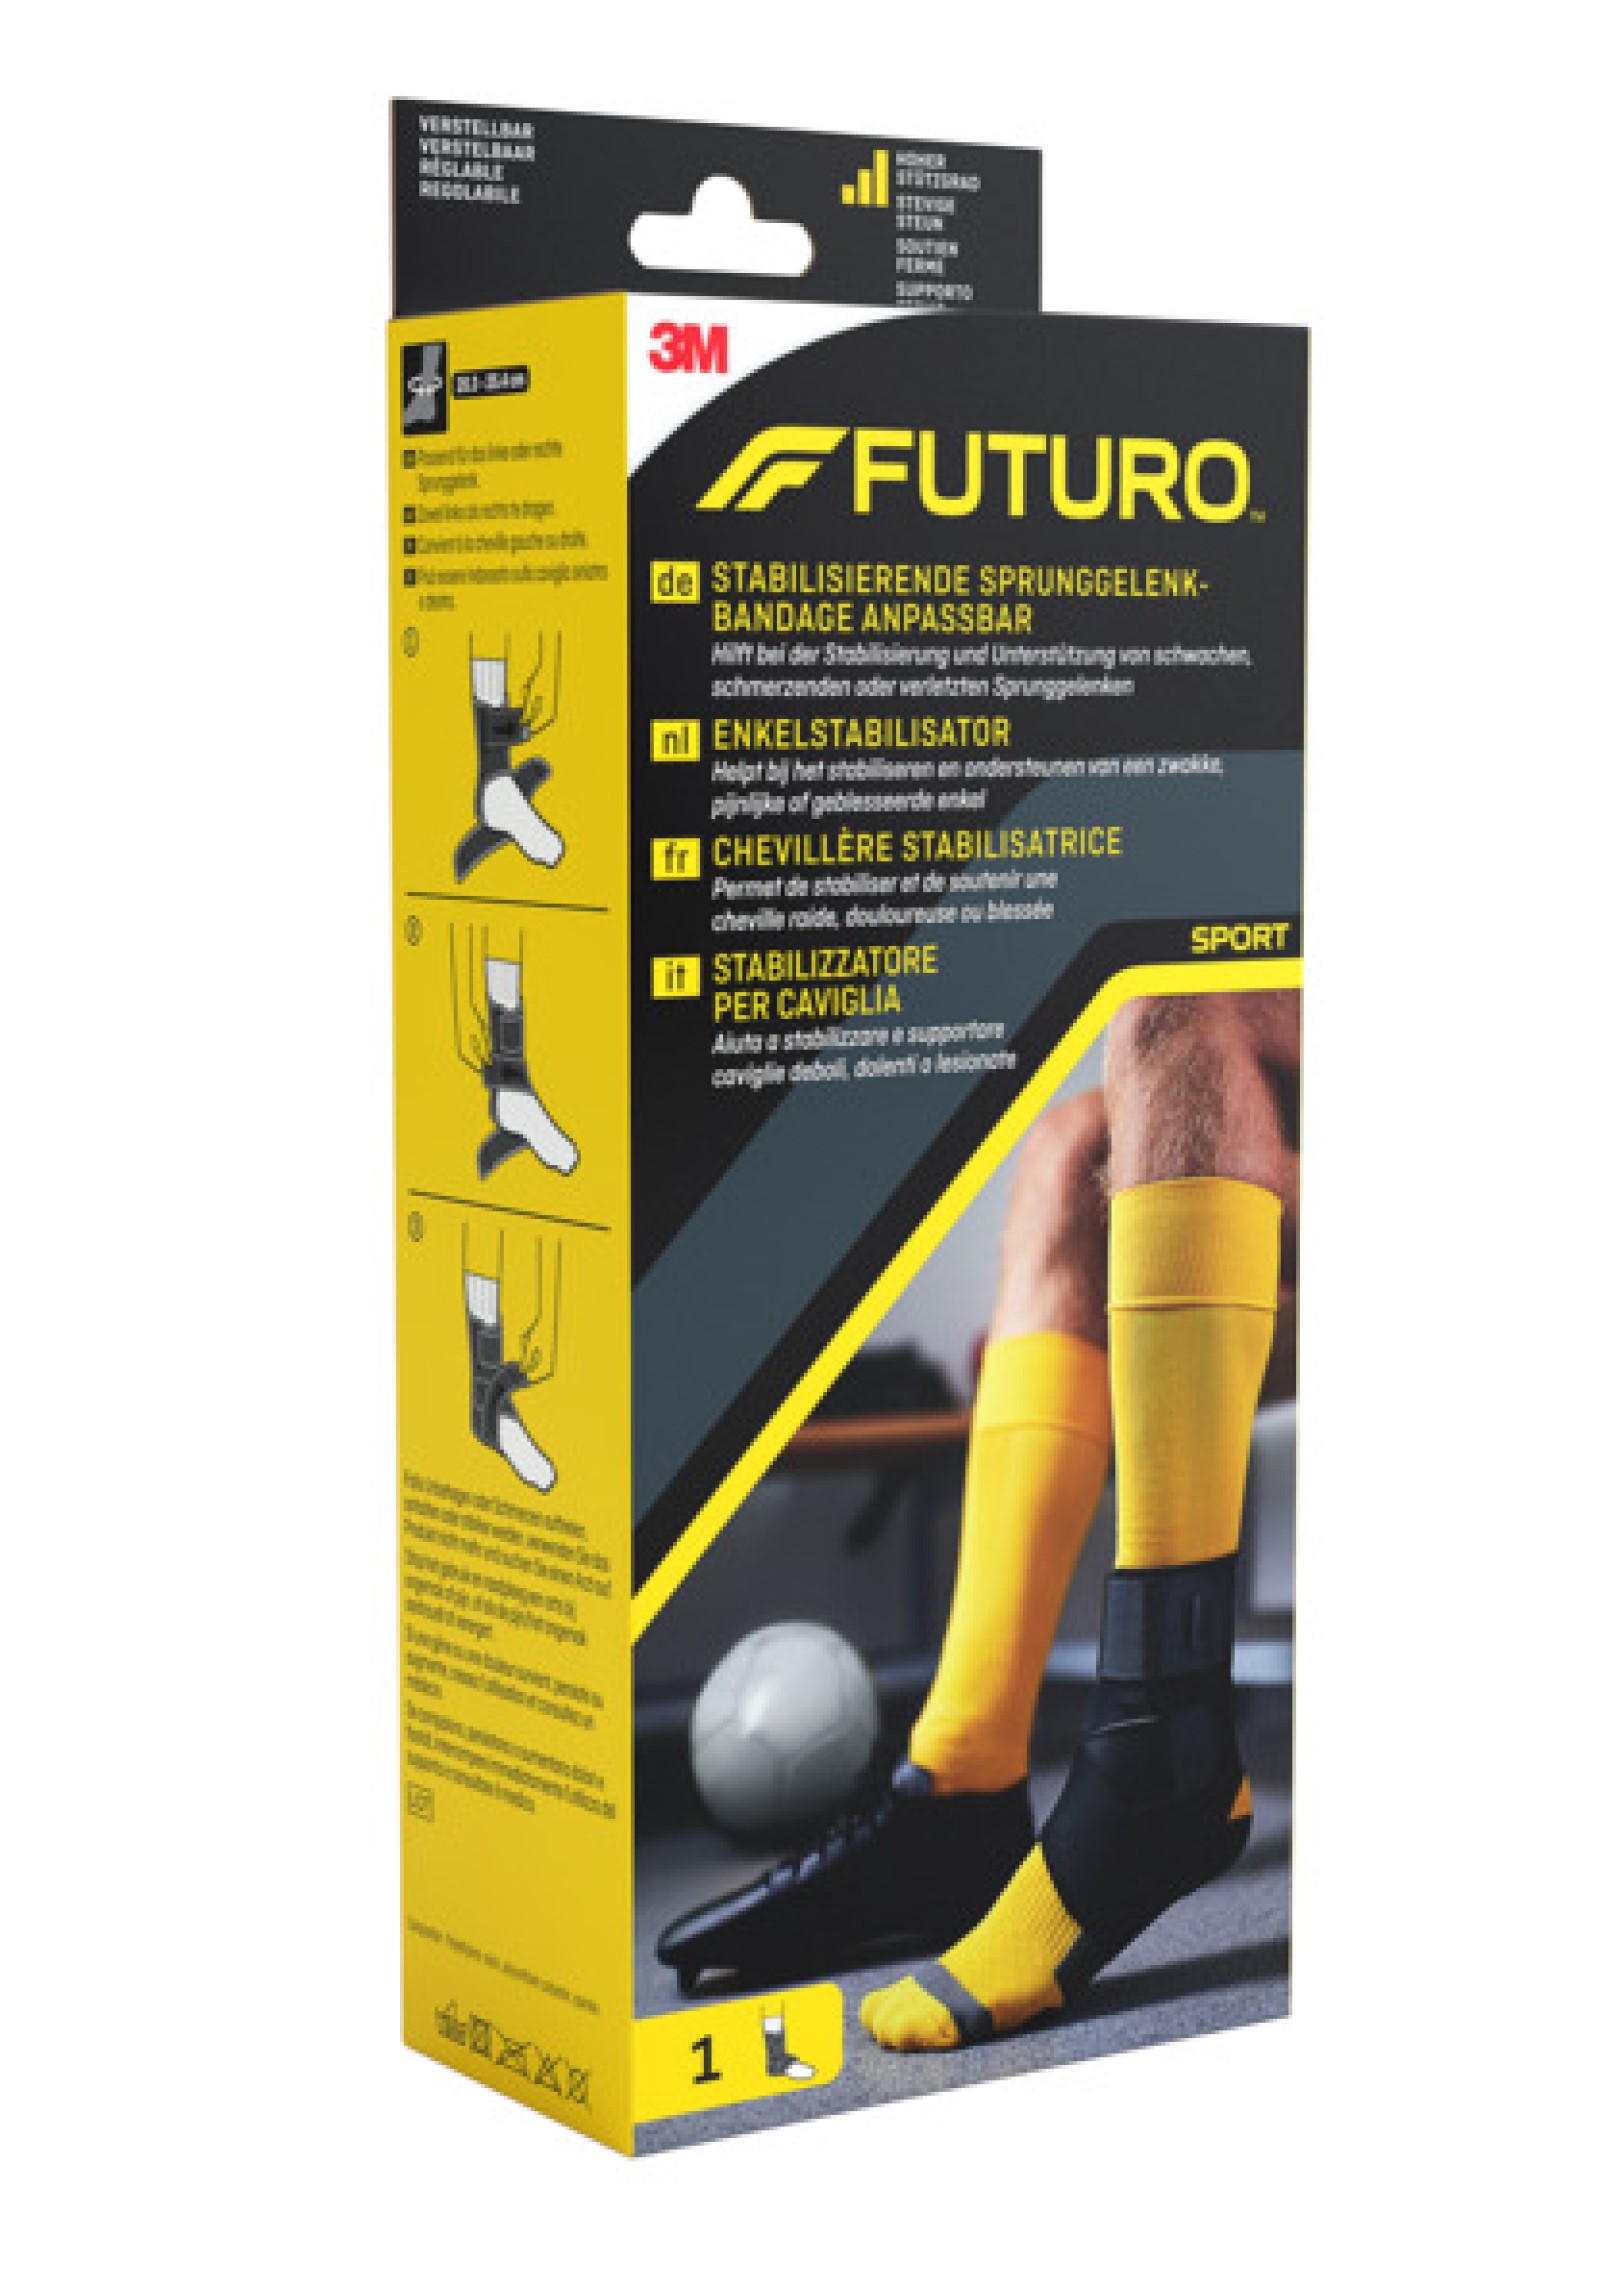 FUTURO™ Stabilisierende Sprunggelenk-Bandage anpassbar 46645, Verstellbar SPORT (20.3 - 25.4 cm)